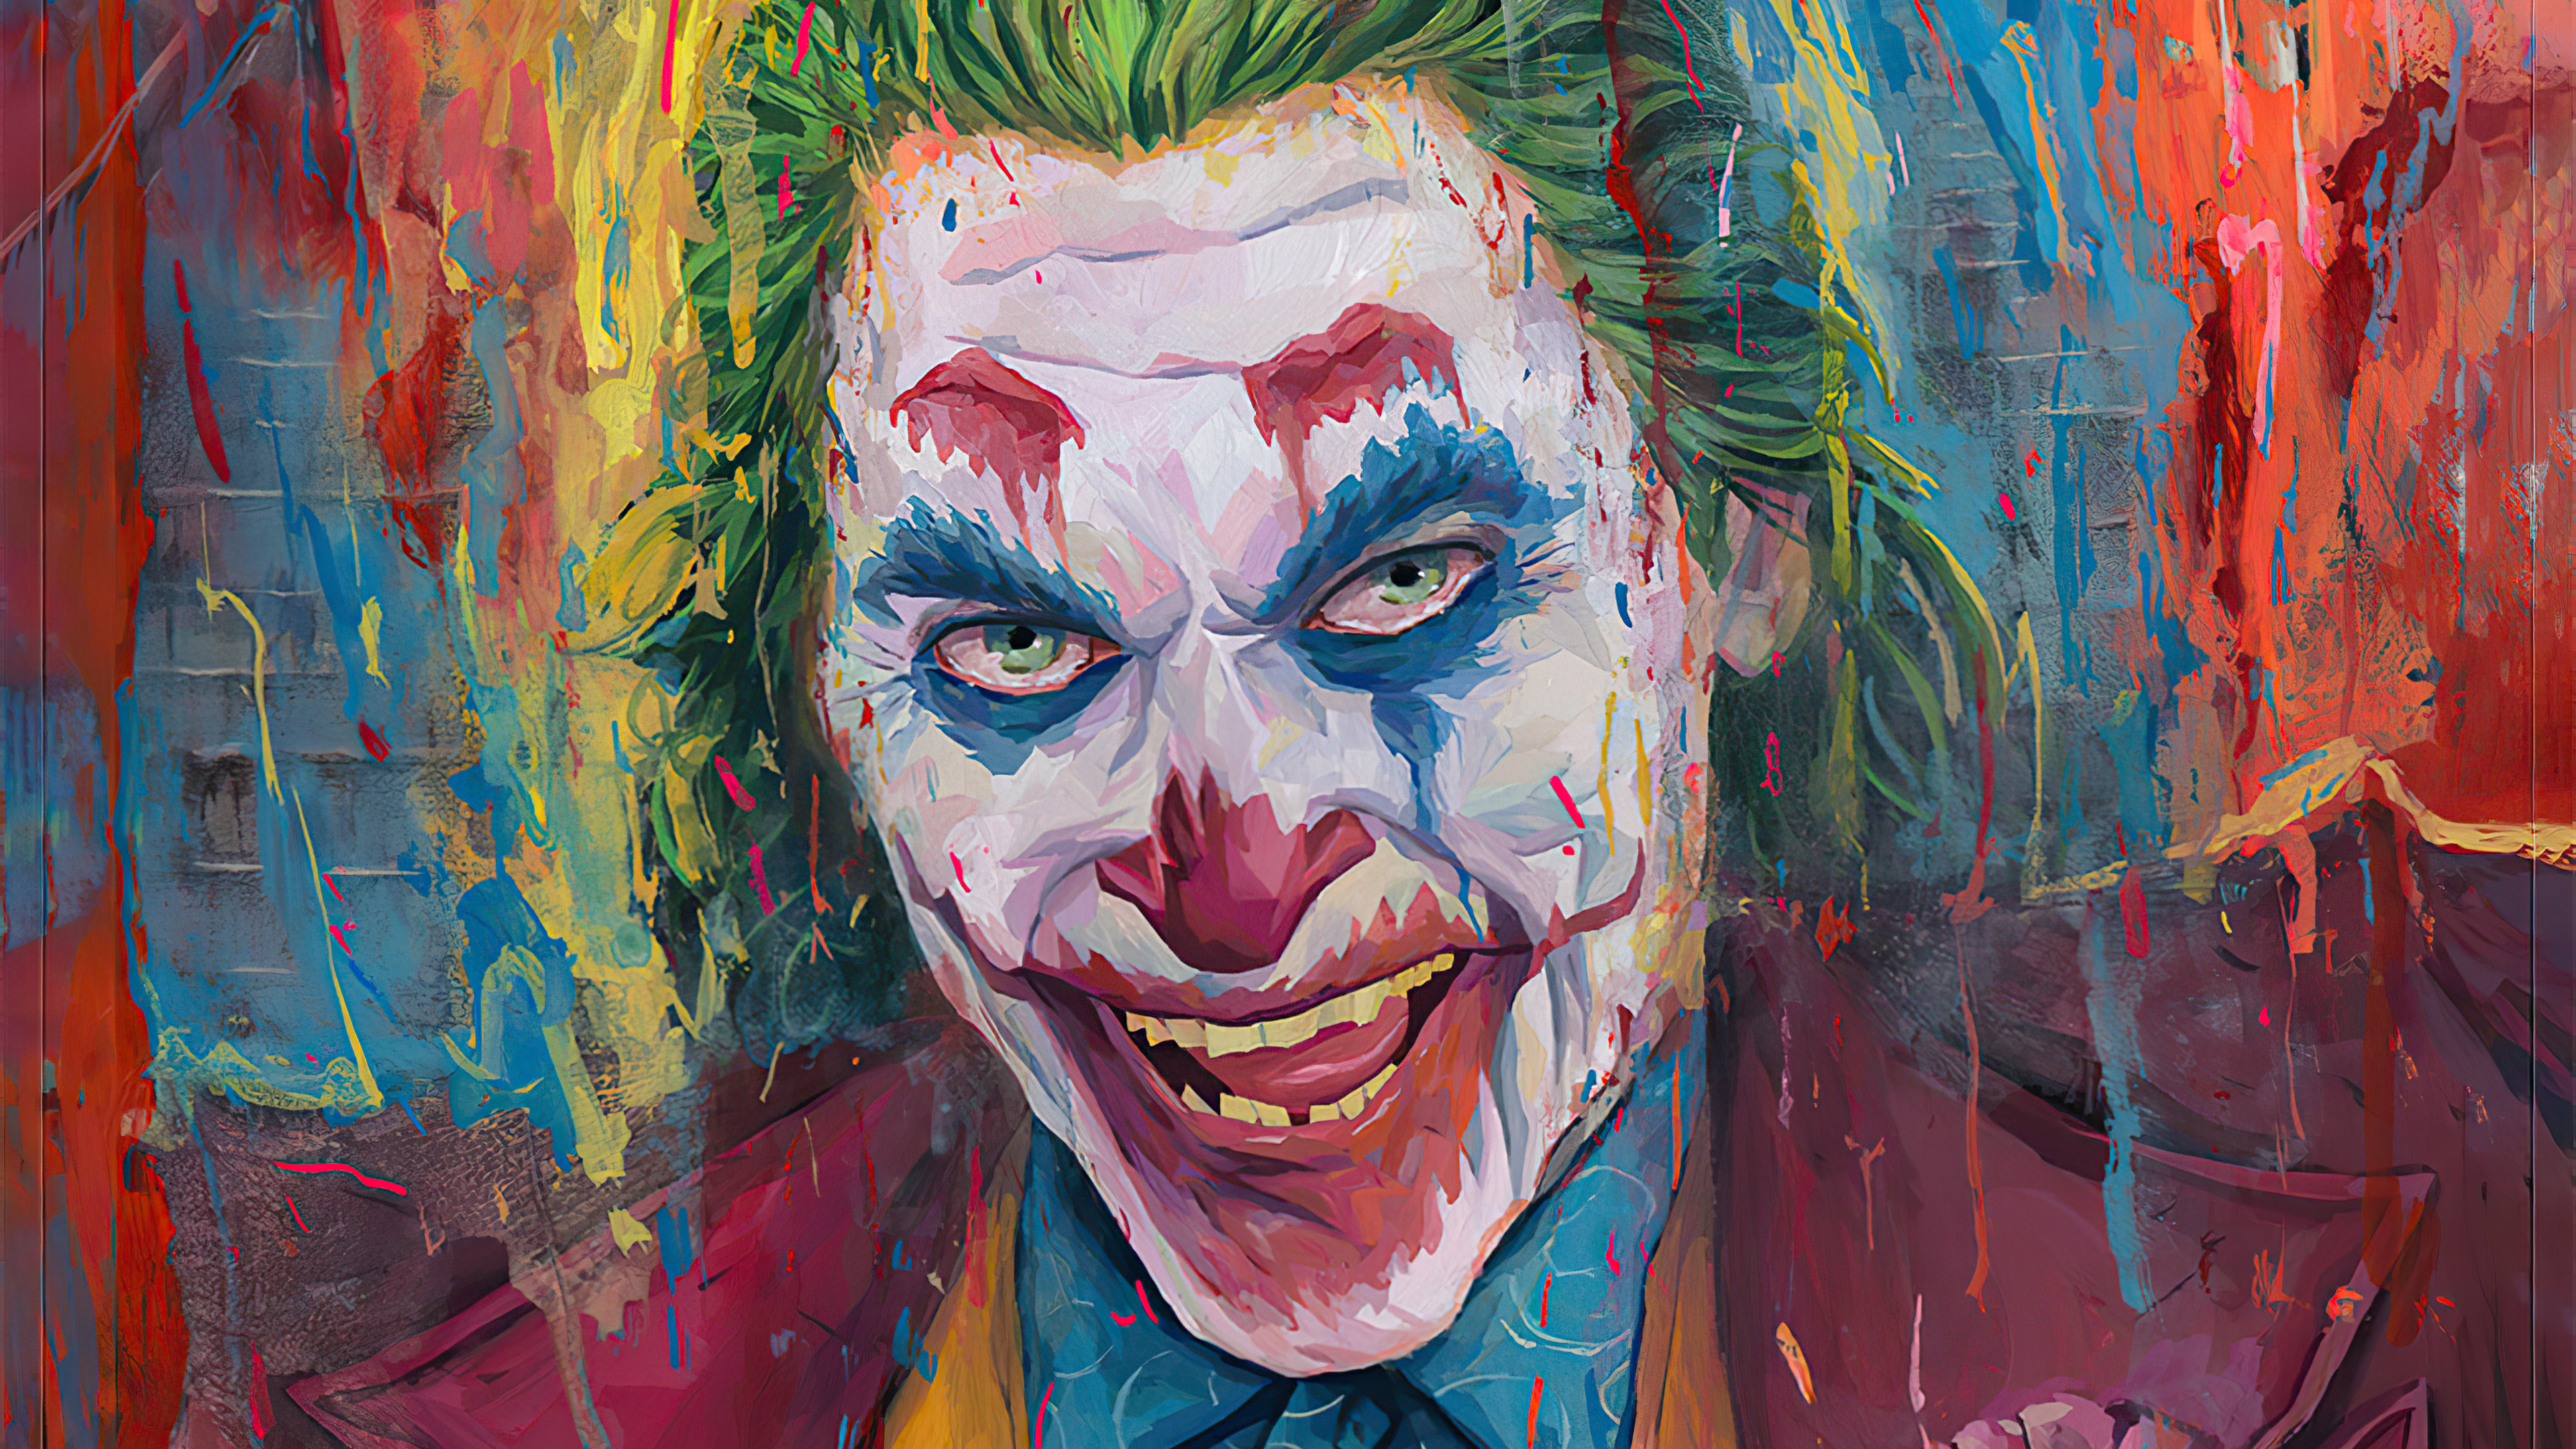 Joker Paint Artwork 4k, HD Superheroes, 4k Wallpapers, Images ...